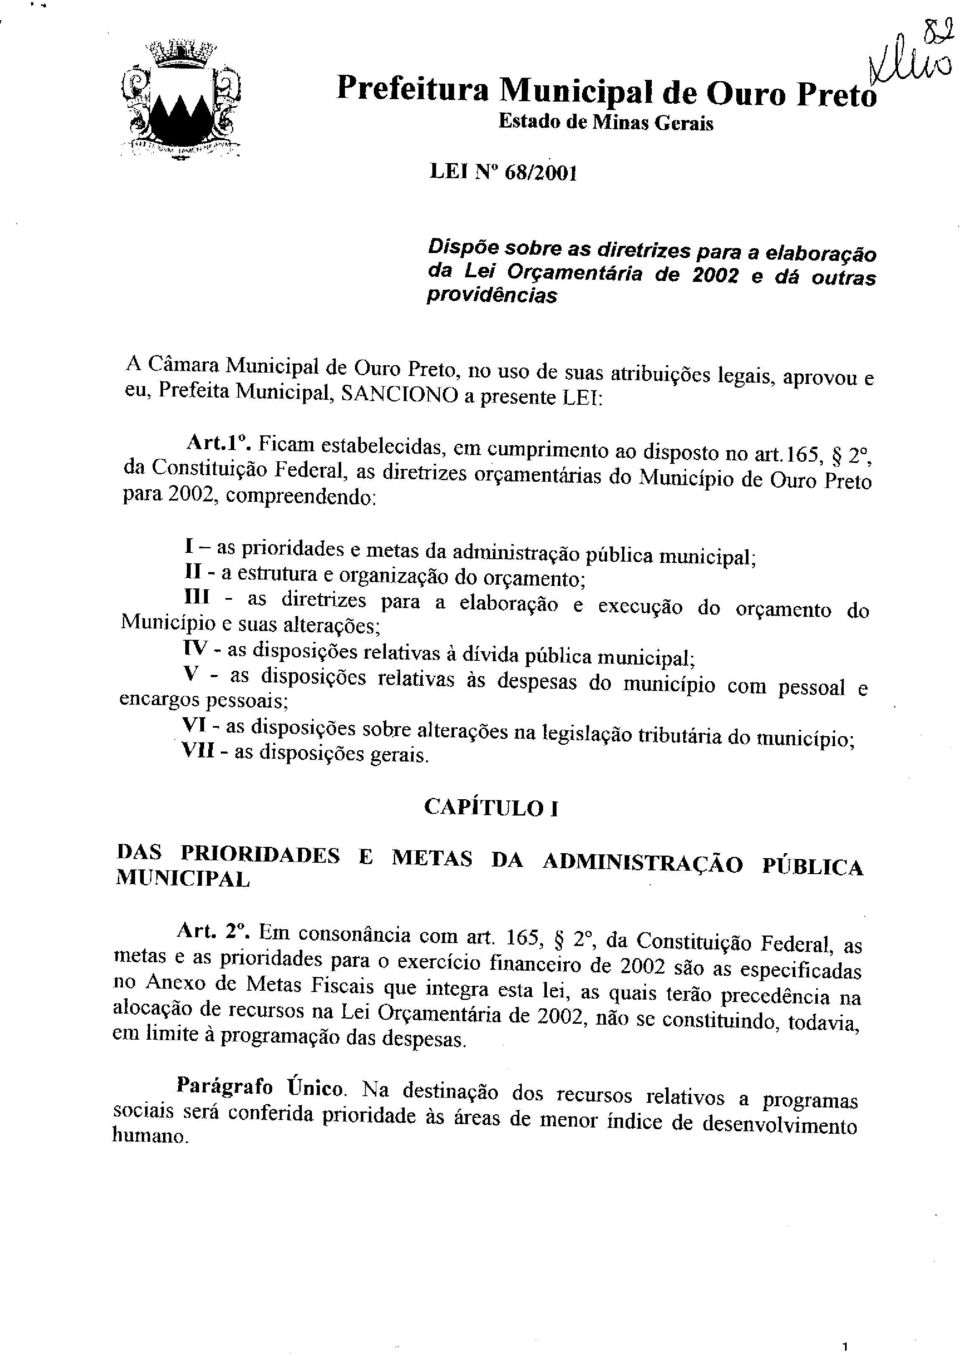 i65, 20, da Constituição Federal, as diretrizes orçamentárias do Município de Ouro Preto para 2002, compreendendo: I - as prioridades e metas da administração pública municipal; 11 - a estrutura e